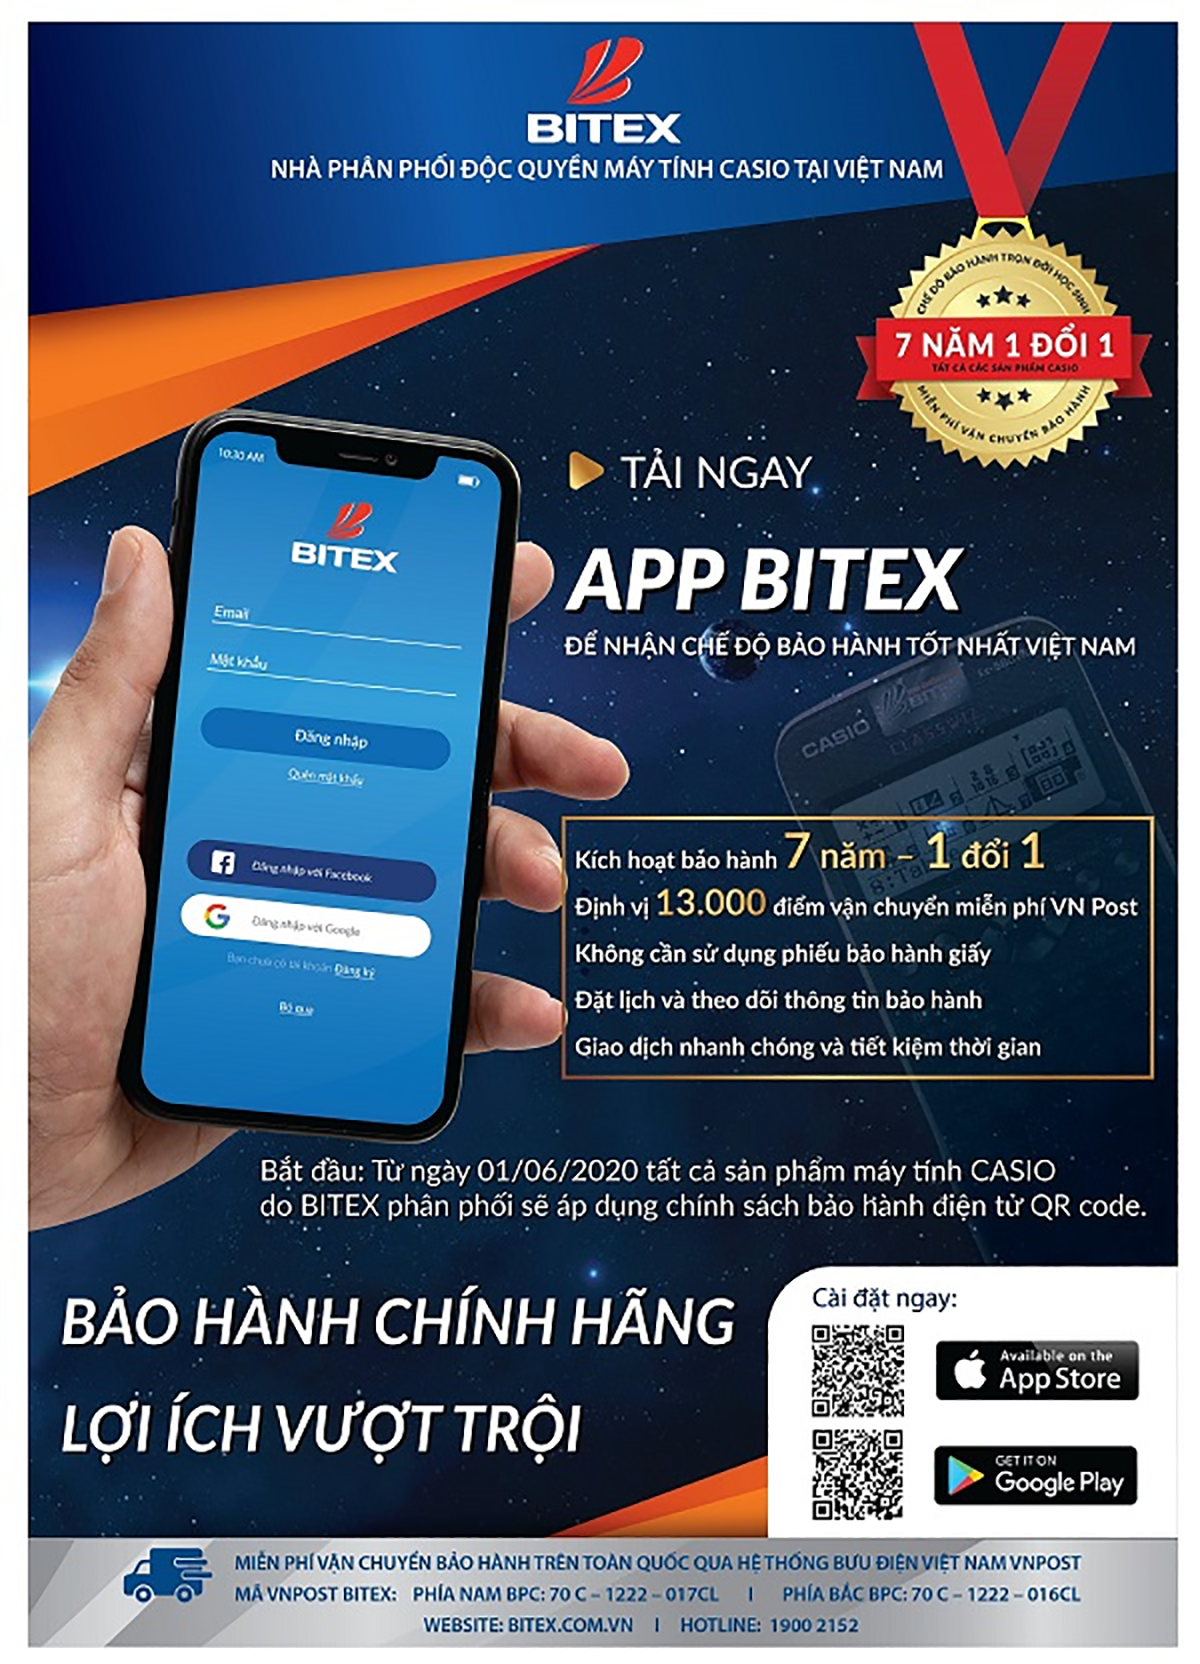 App BITEX - công cụ hàng đầu cung cấp giải pháp tránh hàng giả, hàng xâm phạm bản quyền dành cho người tiêu dùng Casio